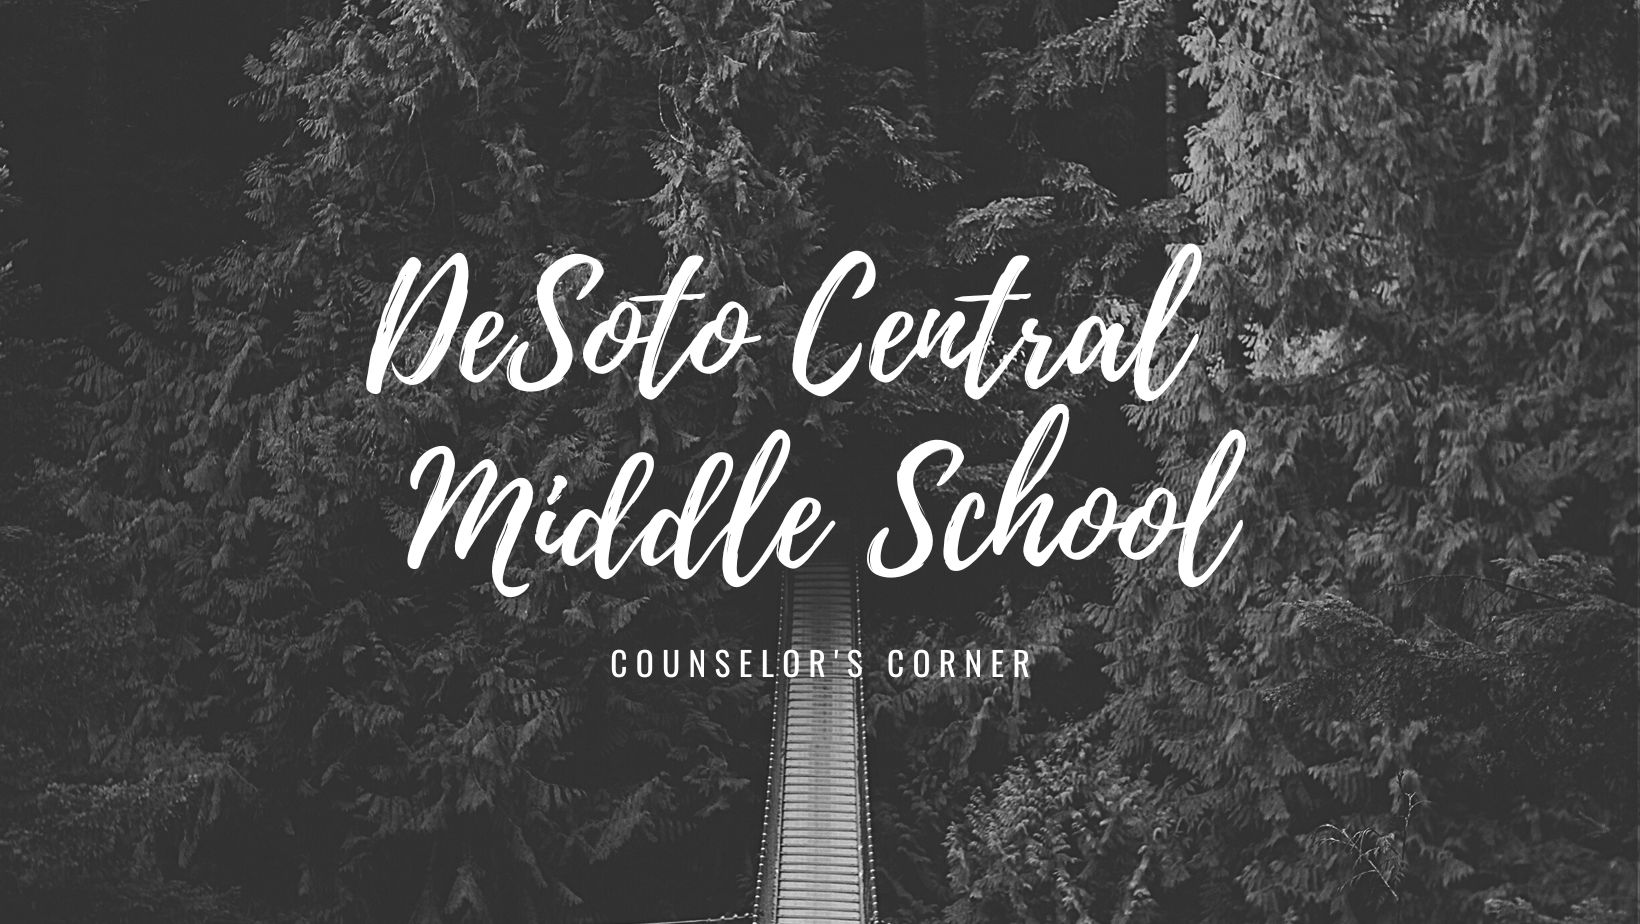 DCMS Counselor's Corner header